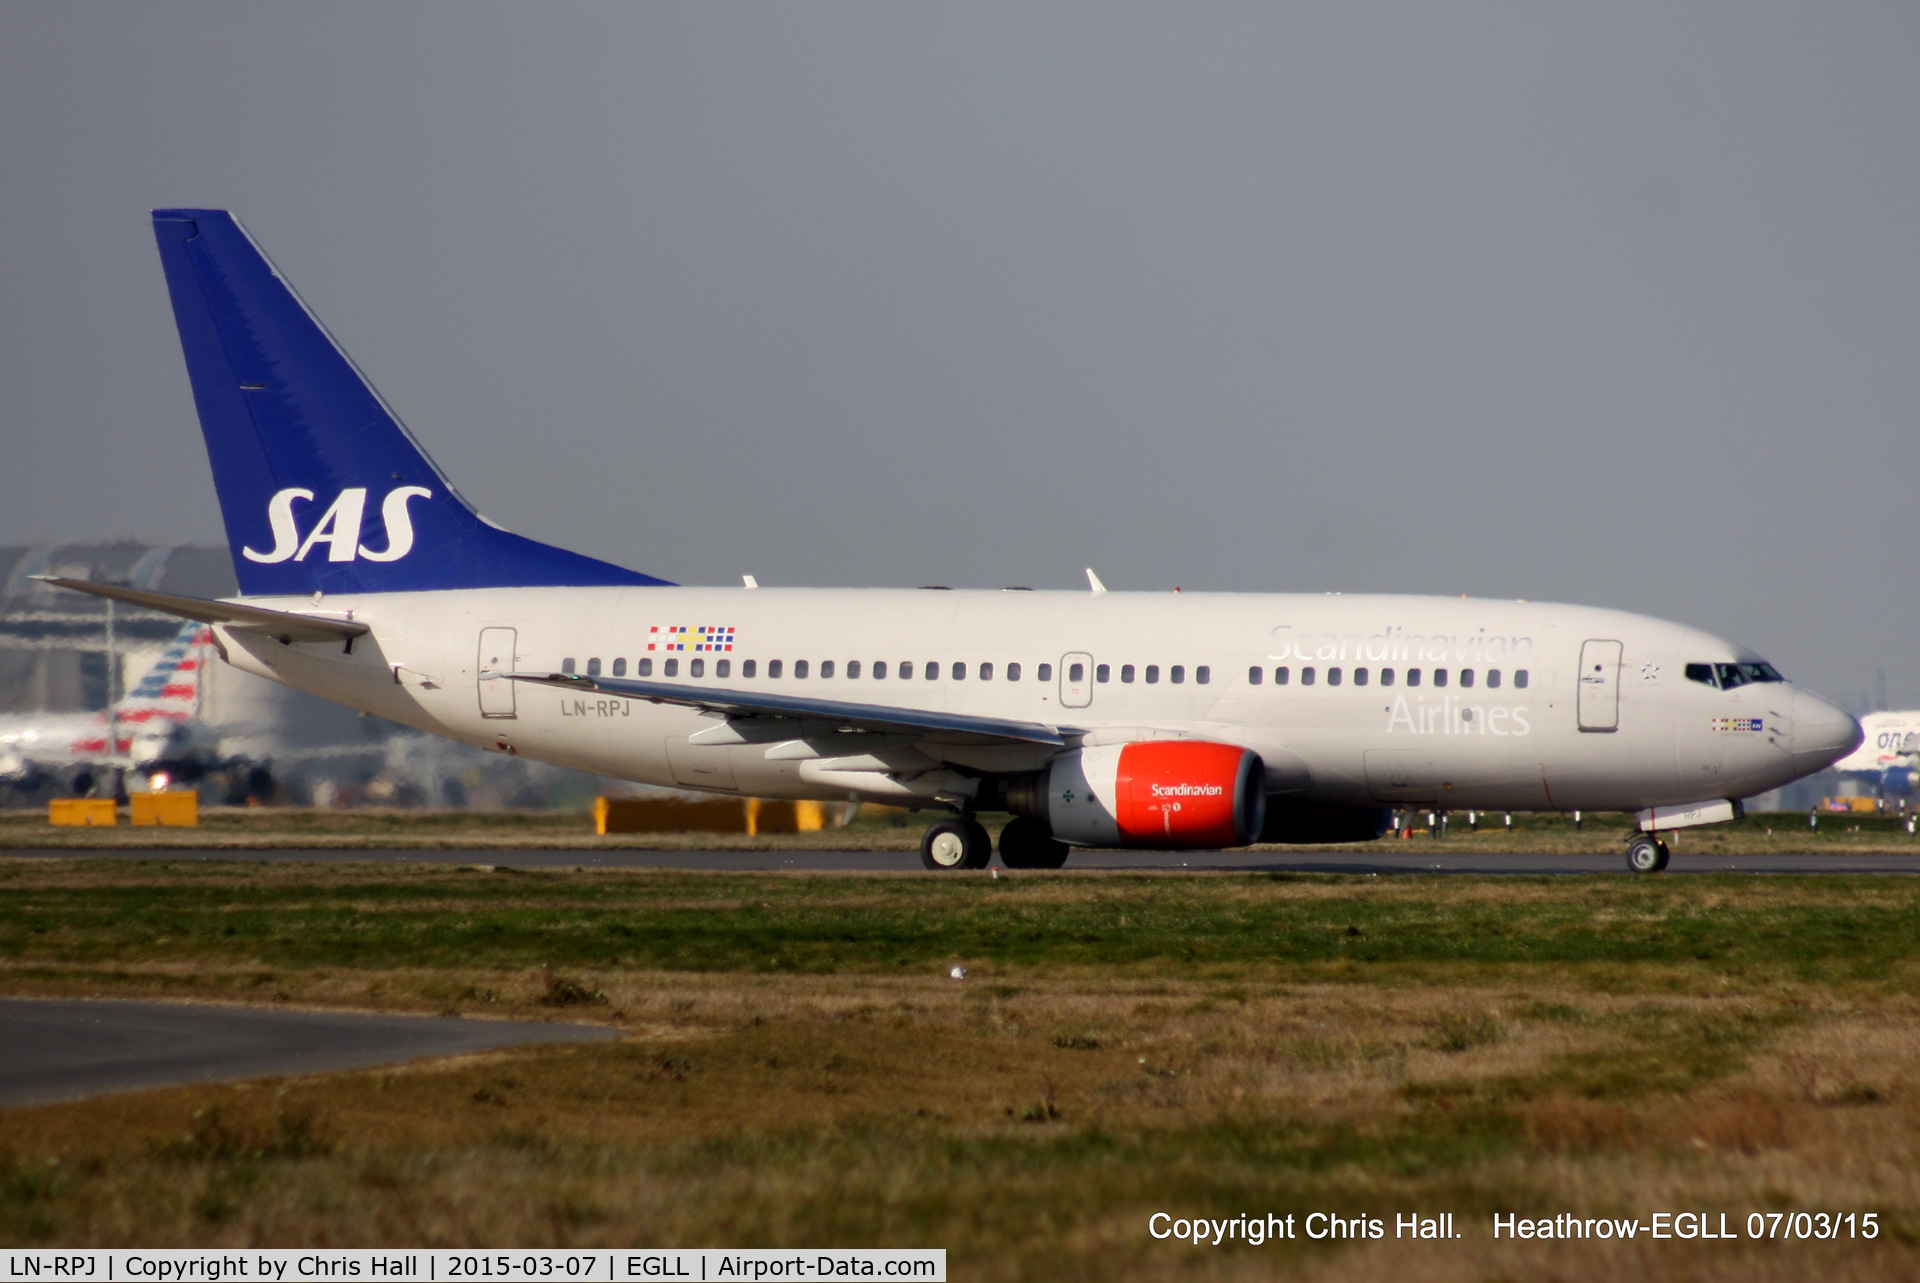 LN-RPJ, 2000 Boeing 737-783 C/N 30192, Scandinavian Airlines